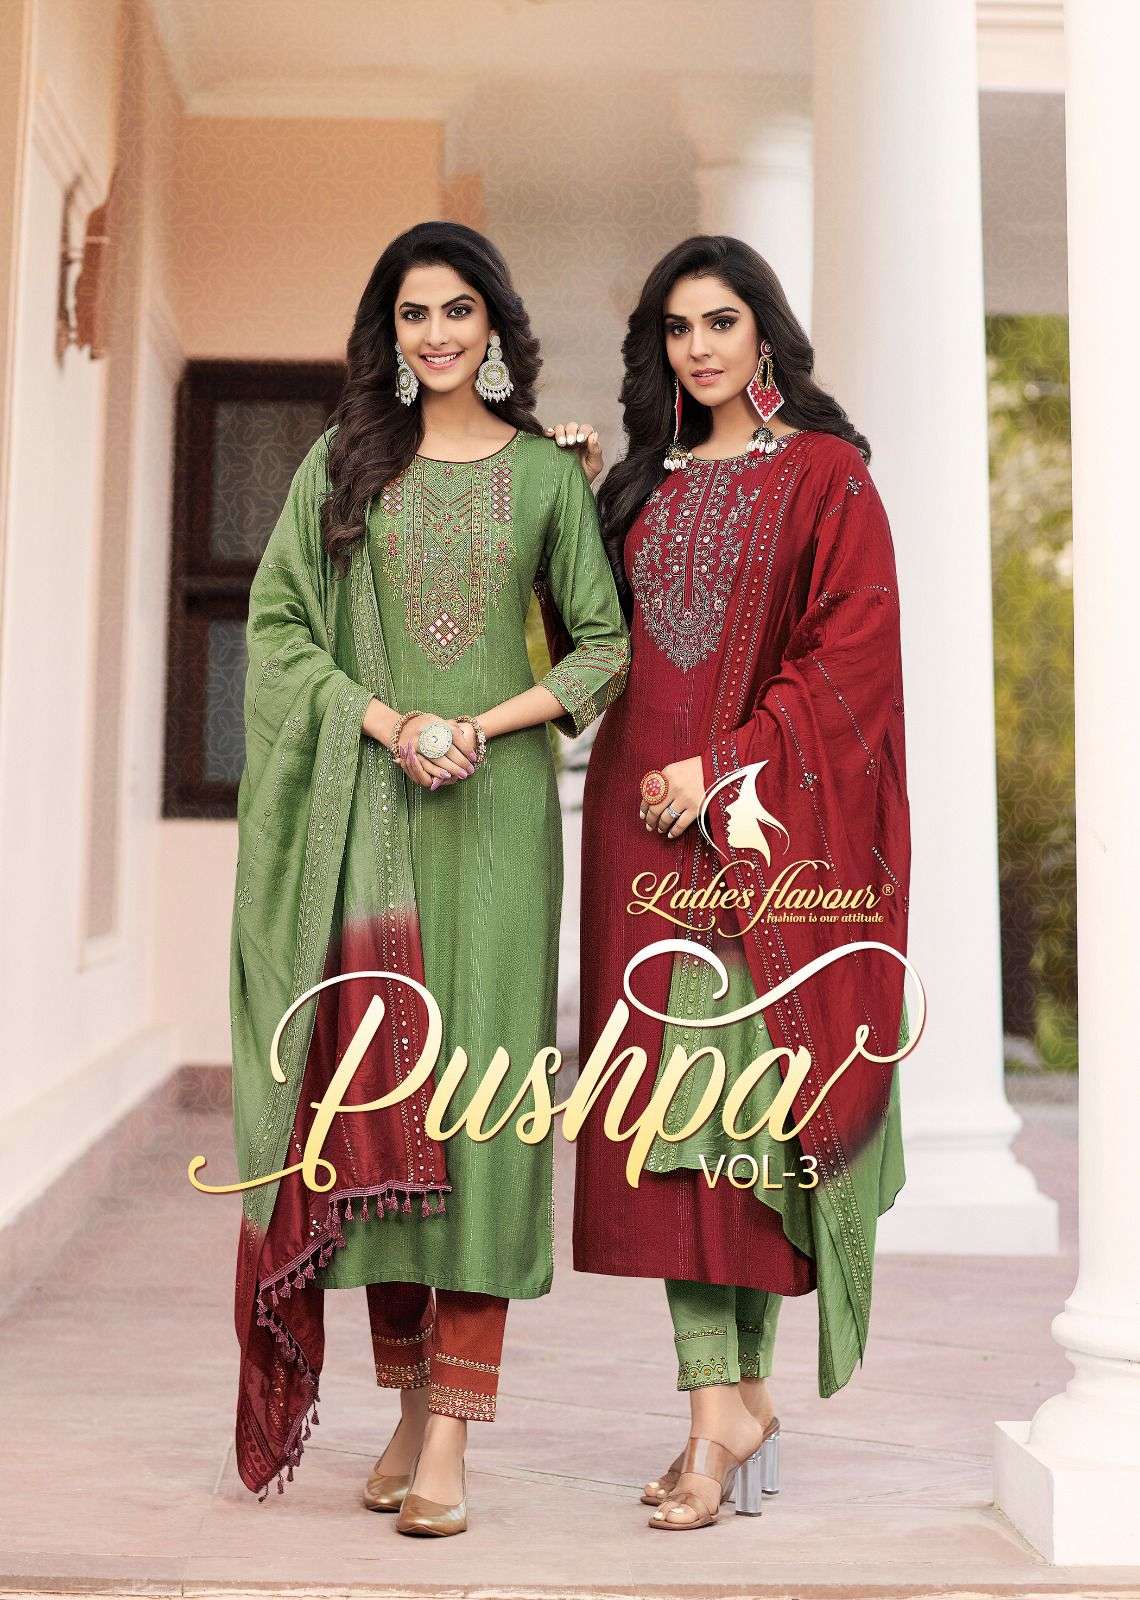 Ladies Flavour Pushpa Vol 3 Exclusive Kurti Pant Dupatta Set New Collection